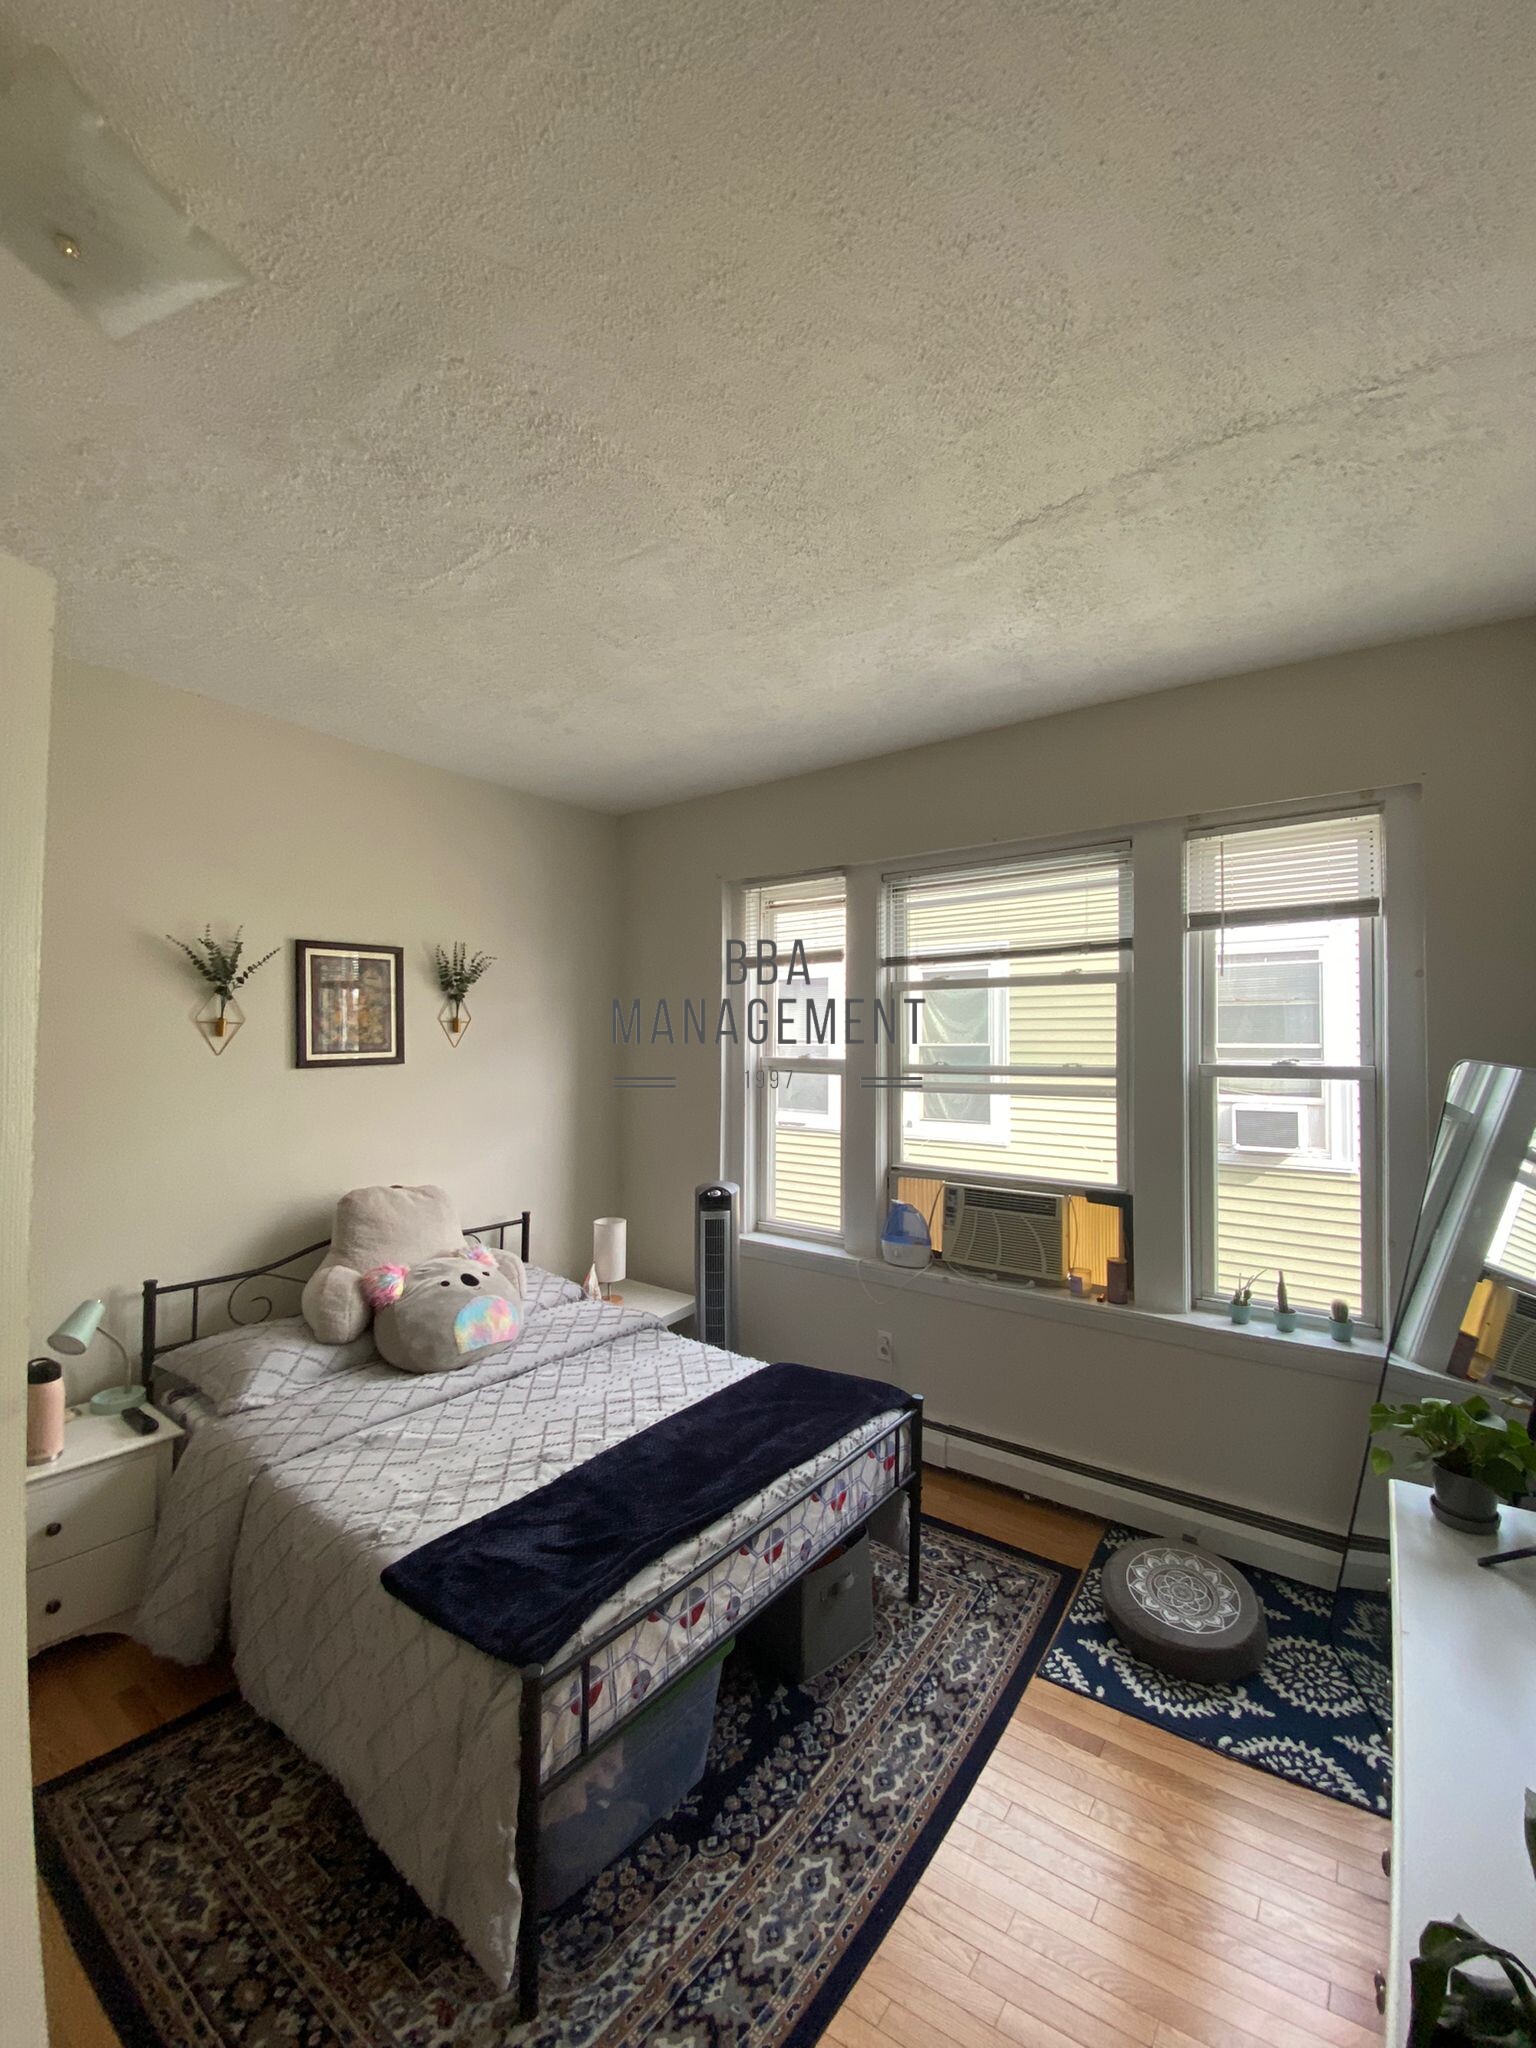 Photos of apartment on Easton,Boston MA 02134